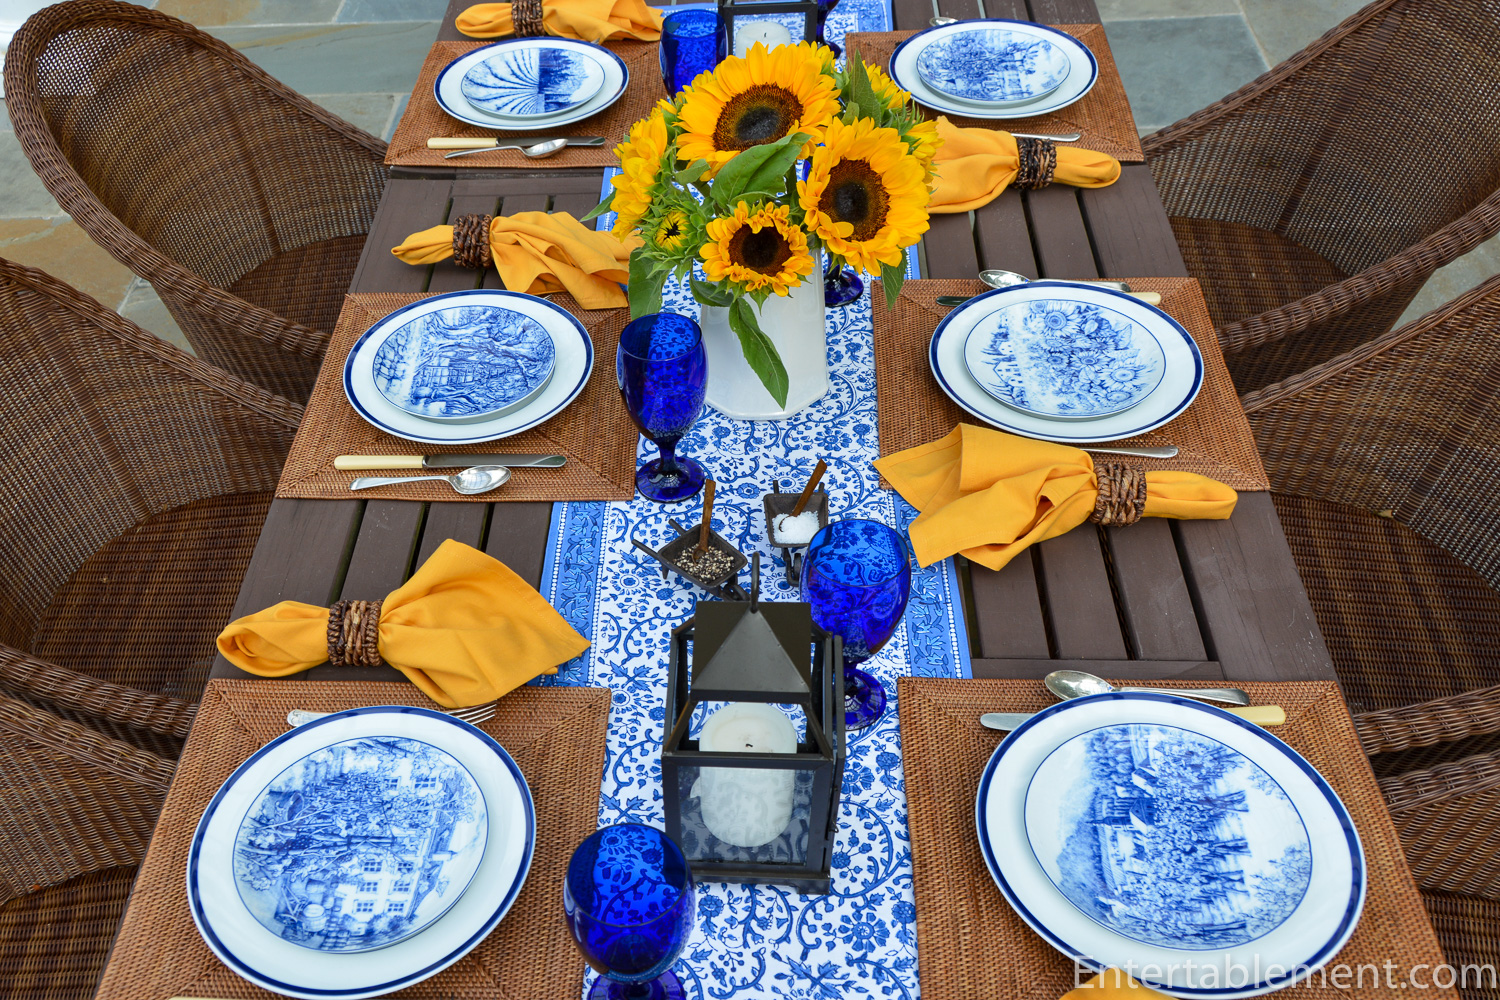 Brasserie Blue-Banded Porcelain Dinner Plate Set - Set of 4